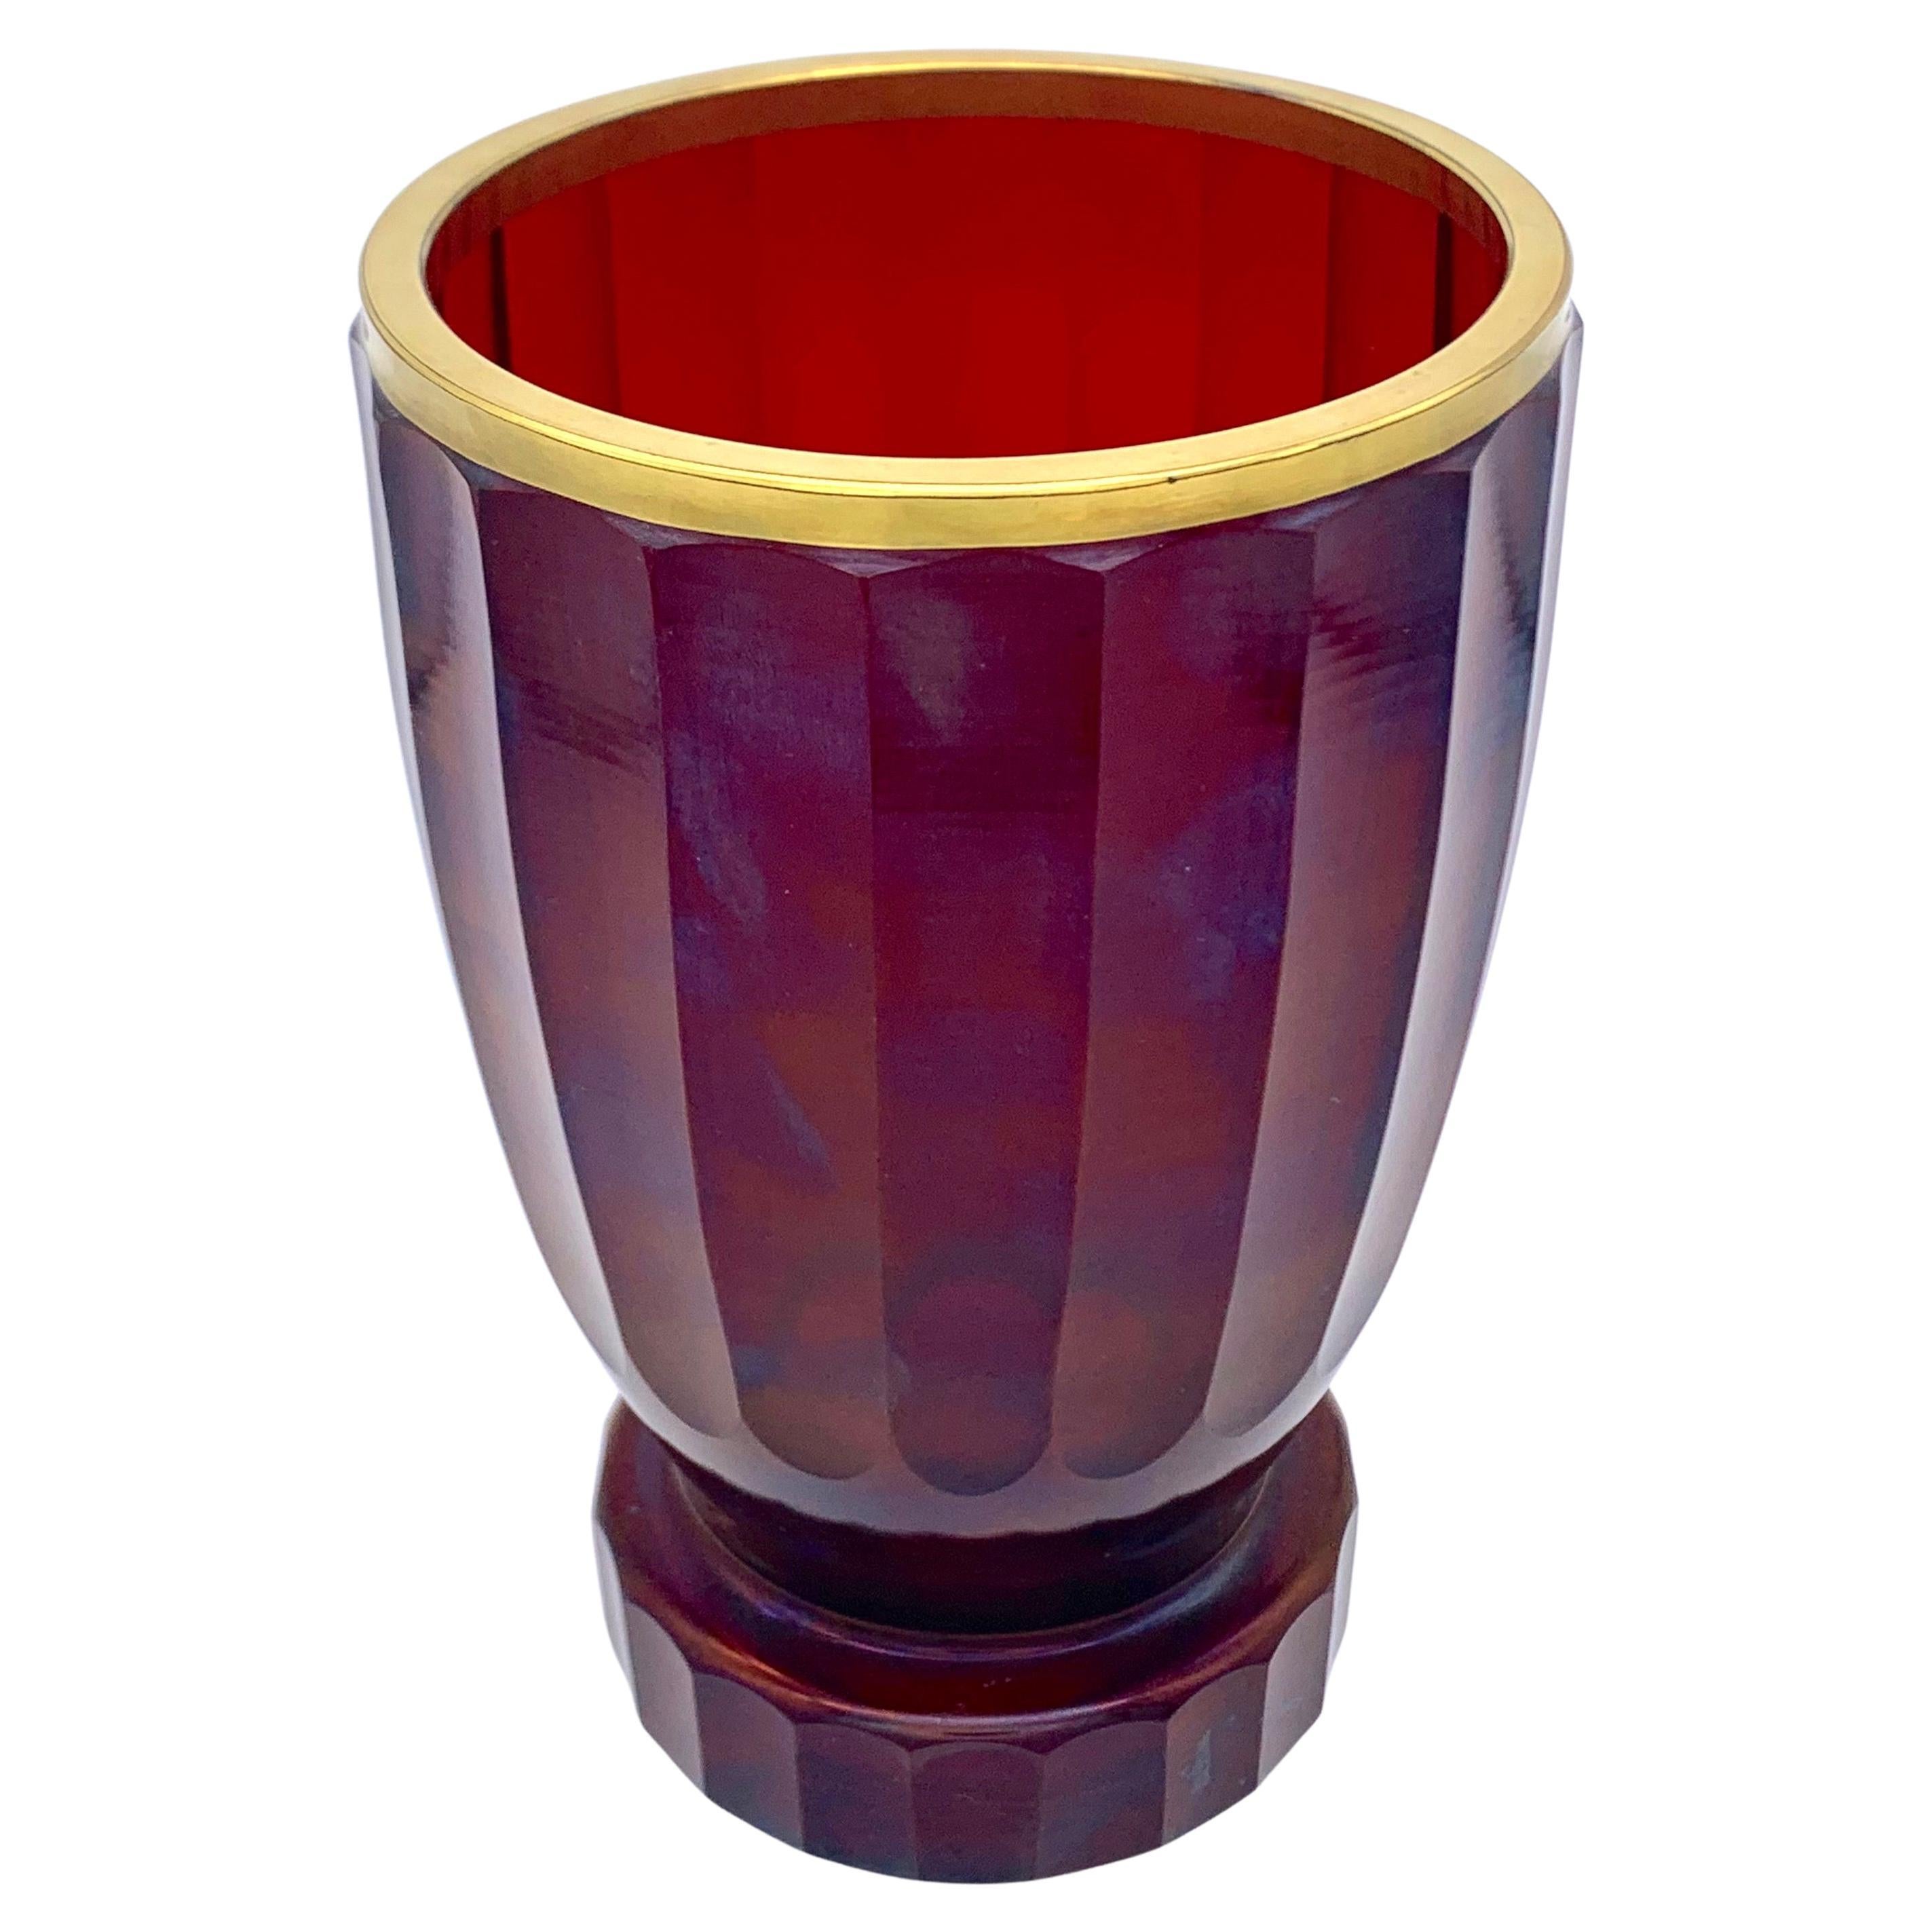 Dieses facettierte Rubinglas ist von eleganter und feiner Beschaffenheit.